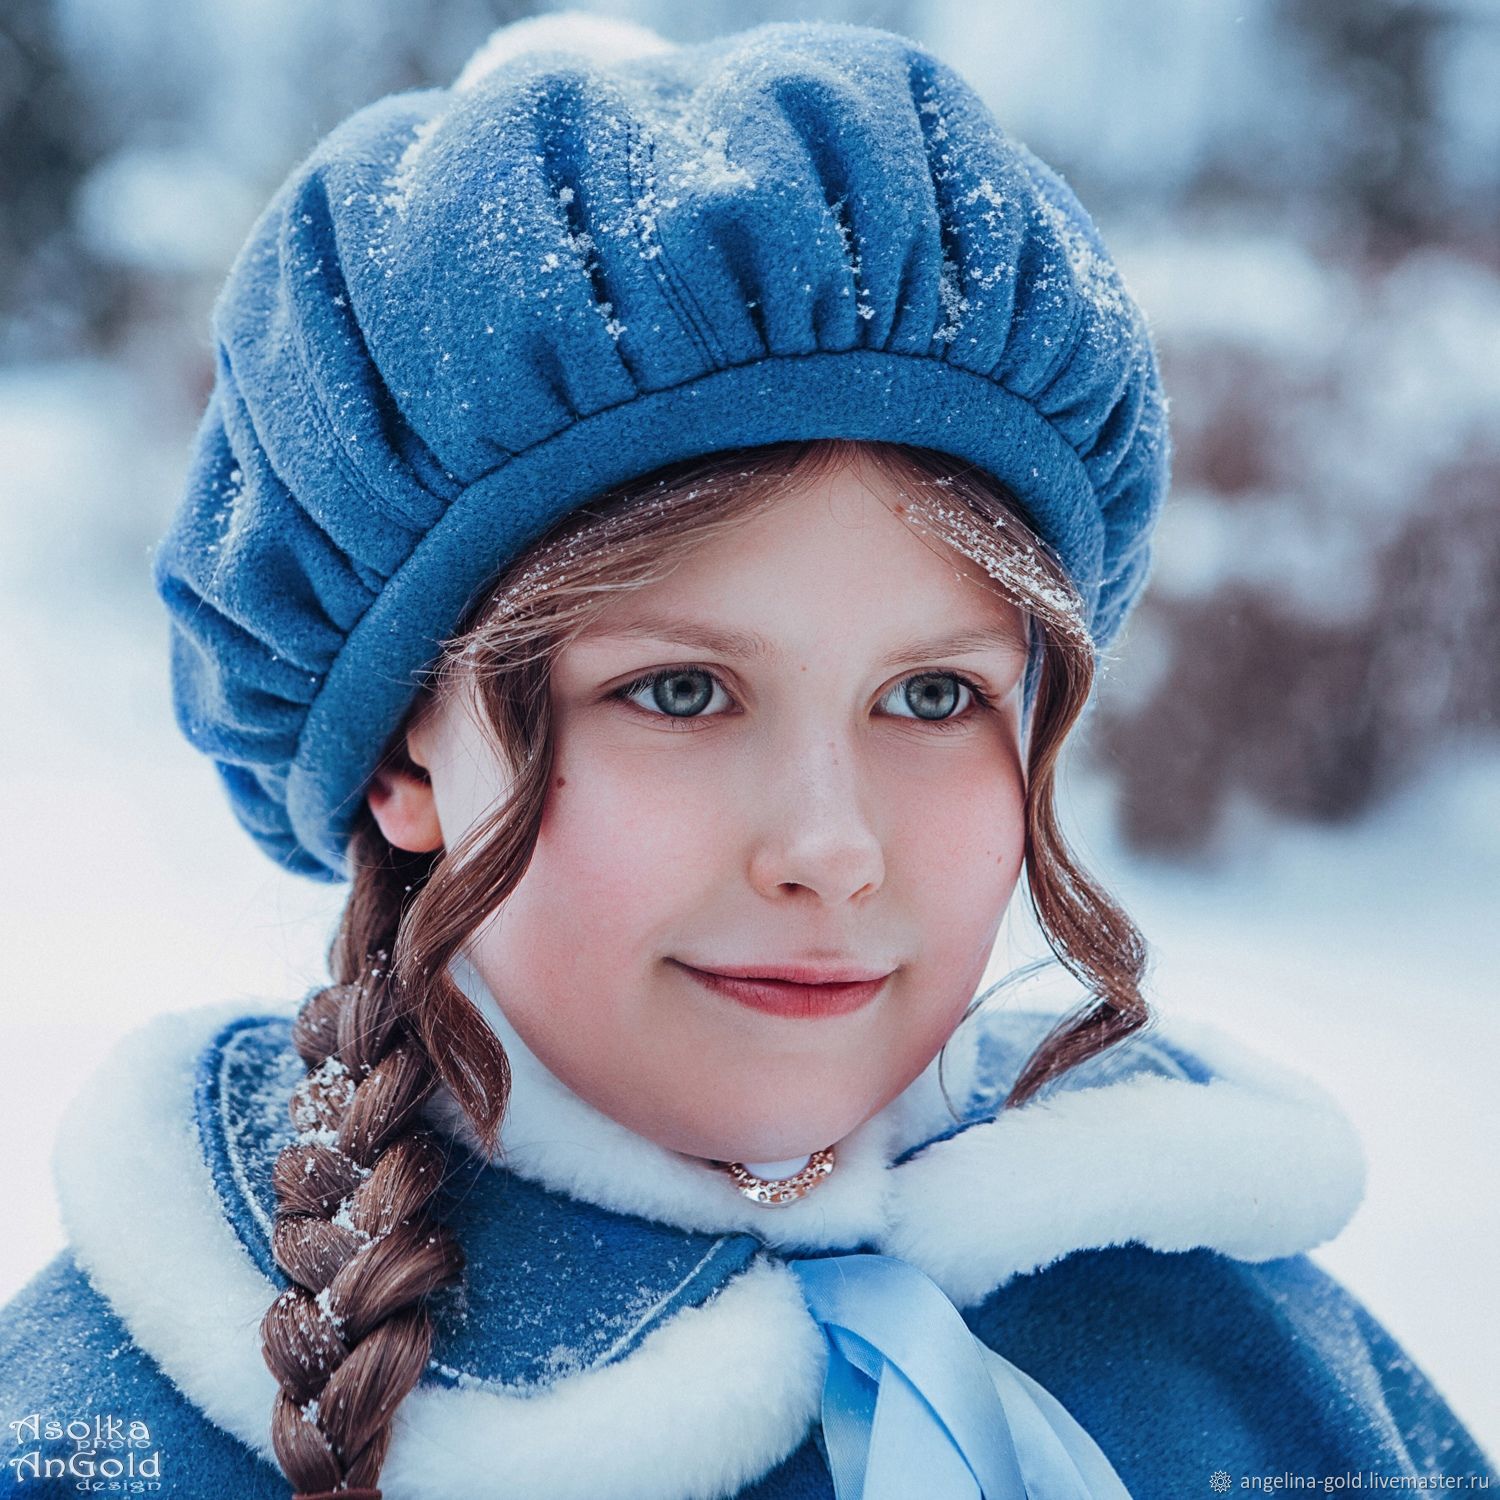  пальто и шапка зимние, Верхняя одежда детская, Санкт-Петербург,  Фото №1